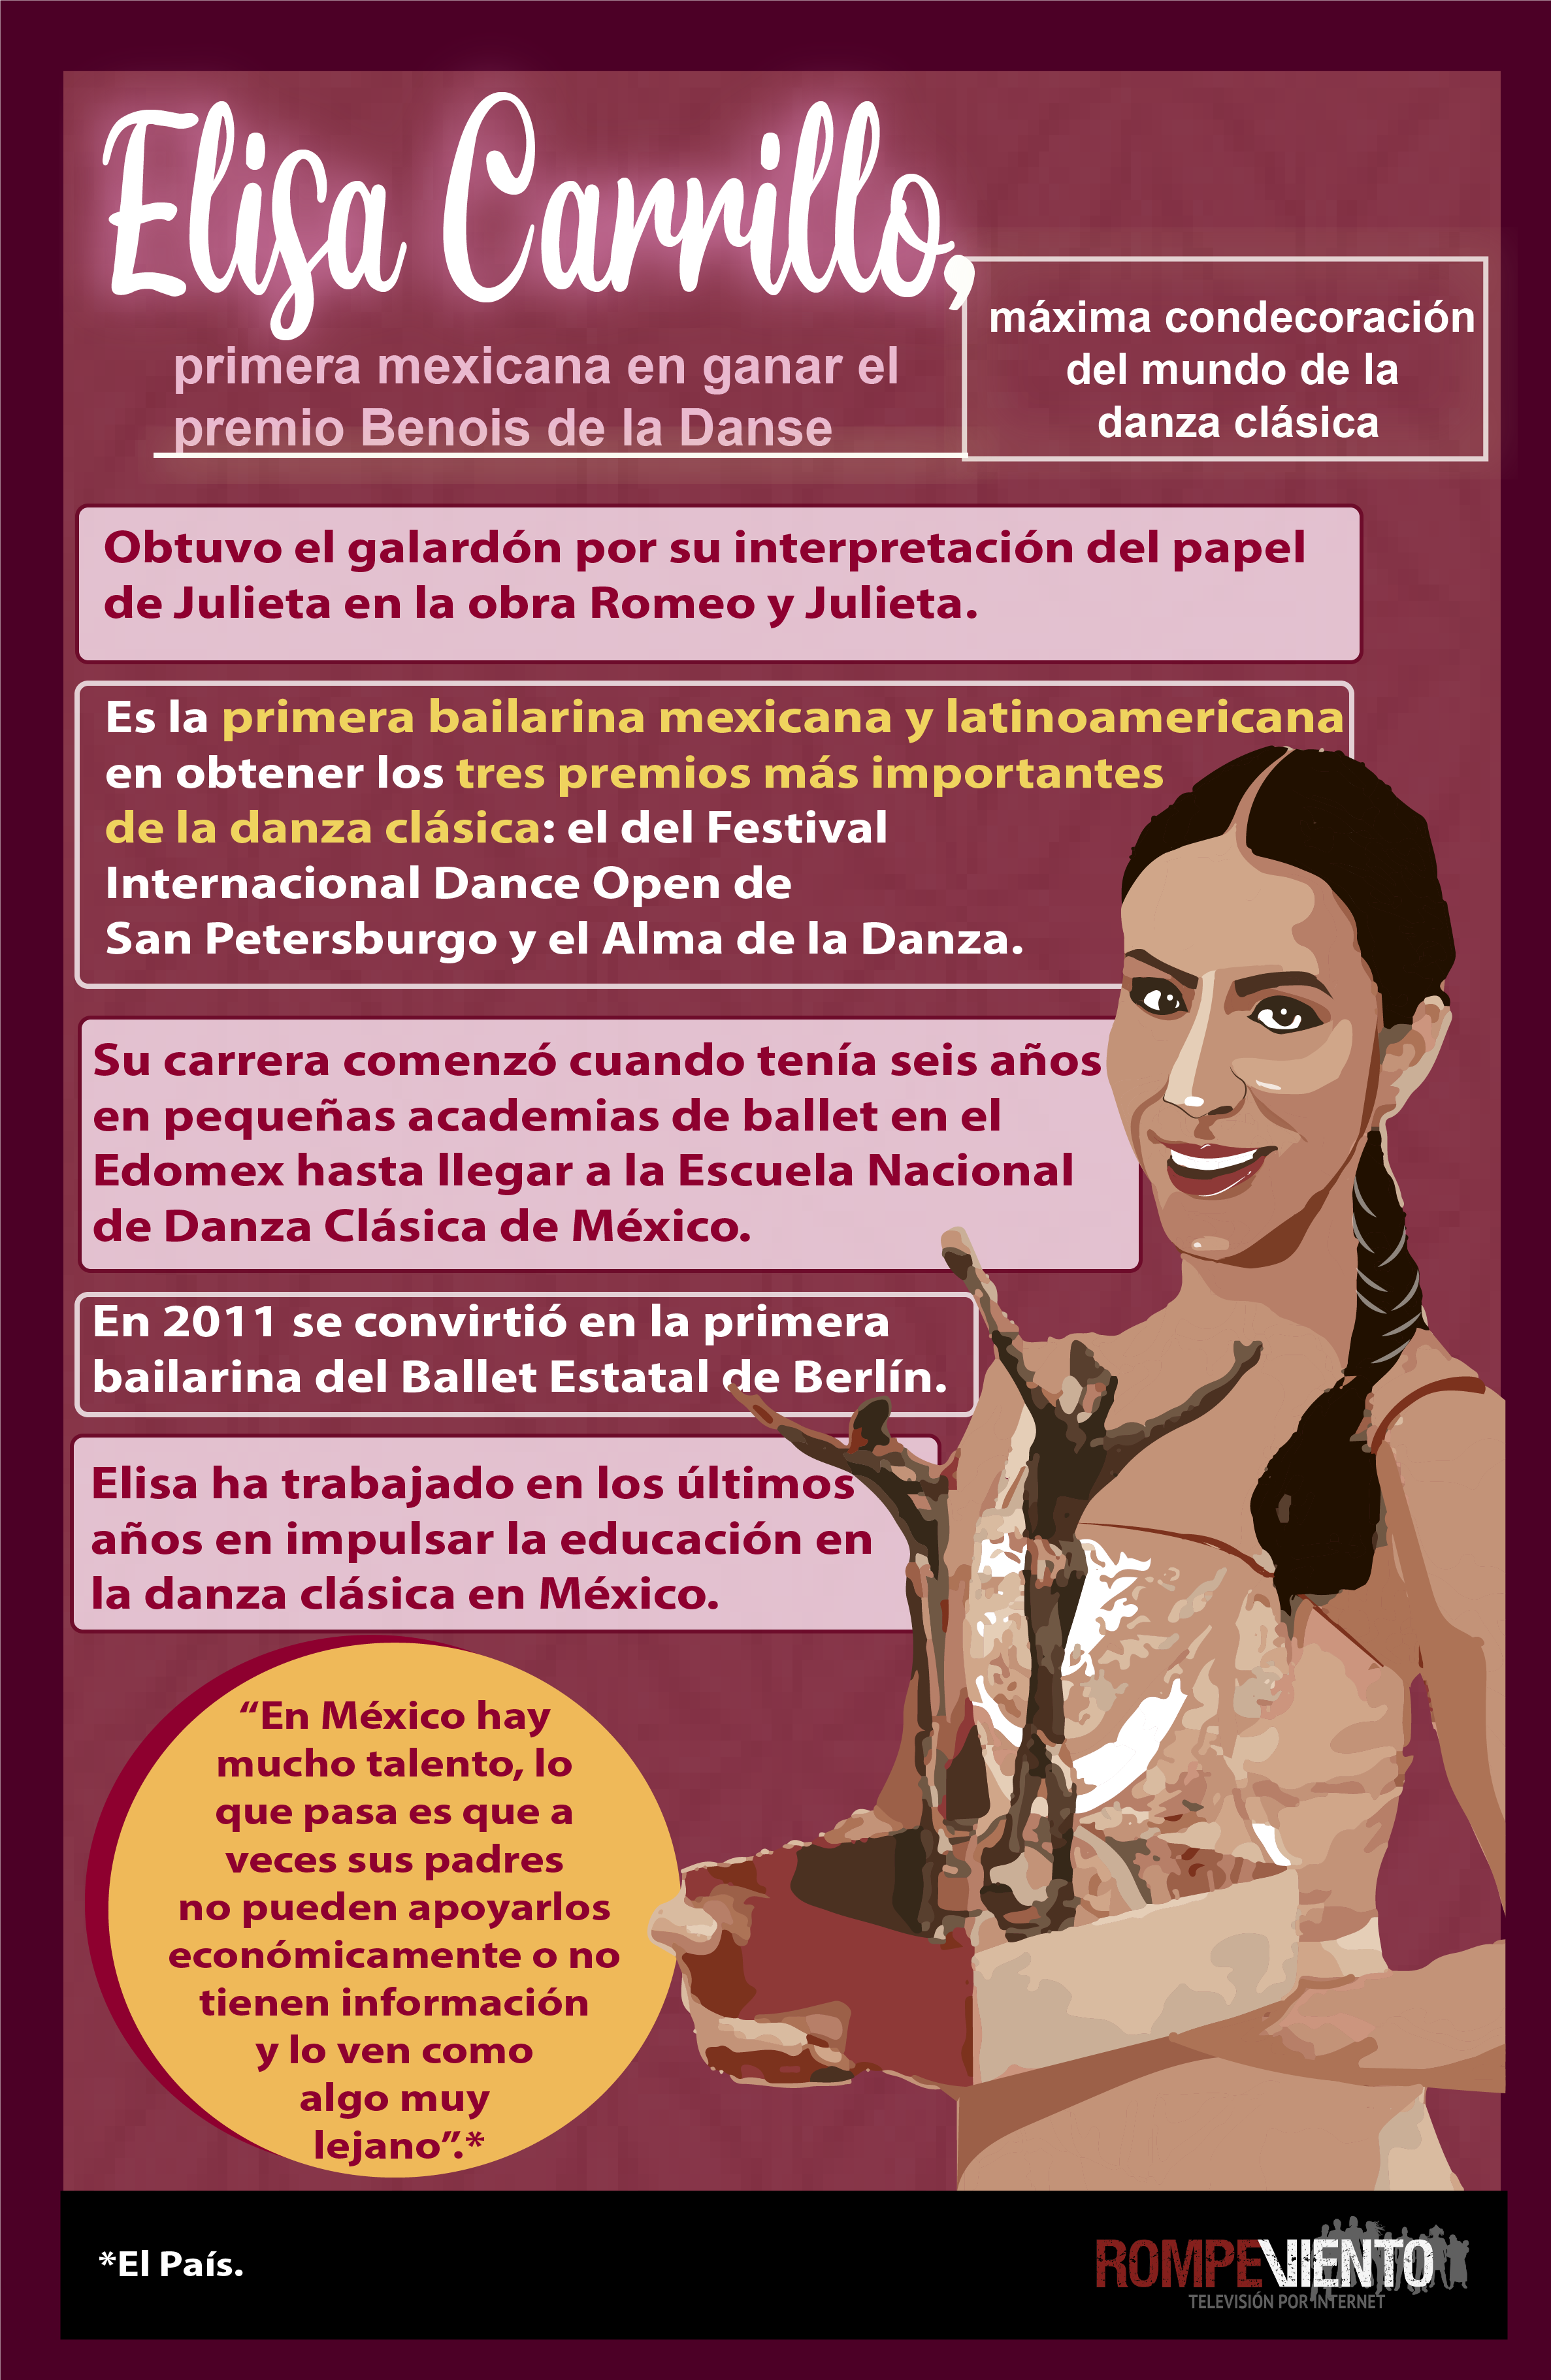 Elisa Carrillo, primera mexicana en ganar el premio Benois de la Danse